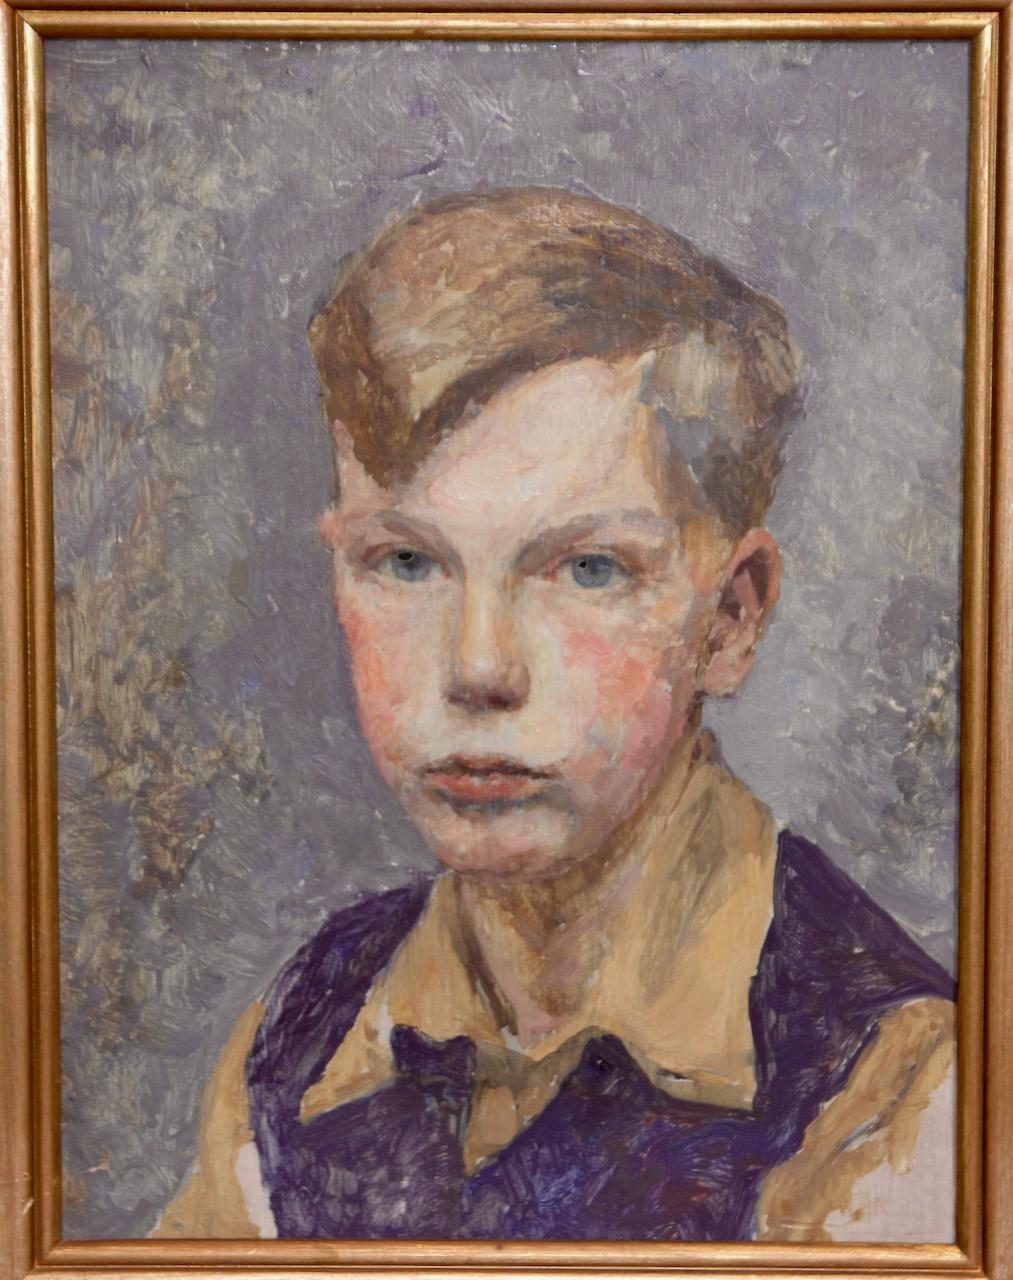 Porträt eines jungen Jungen, impressionistische Malerei.

Maße OHNE Rahmen in cm 32 x 42